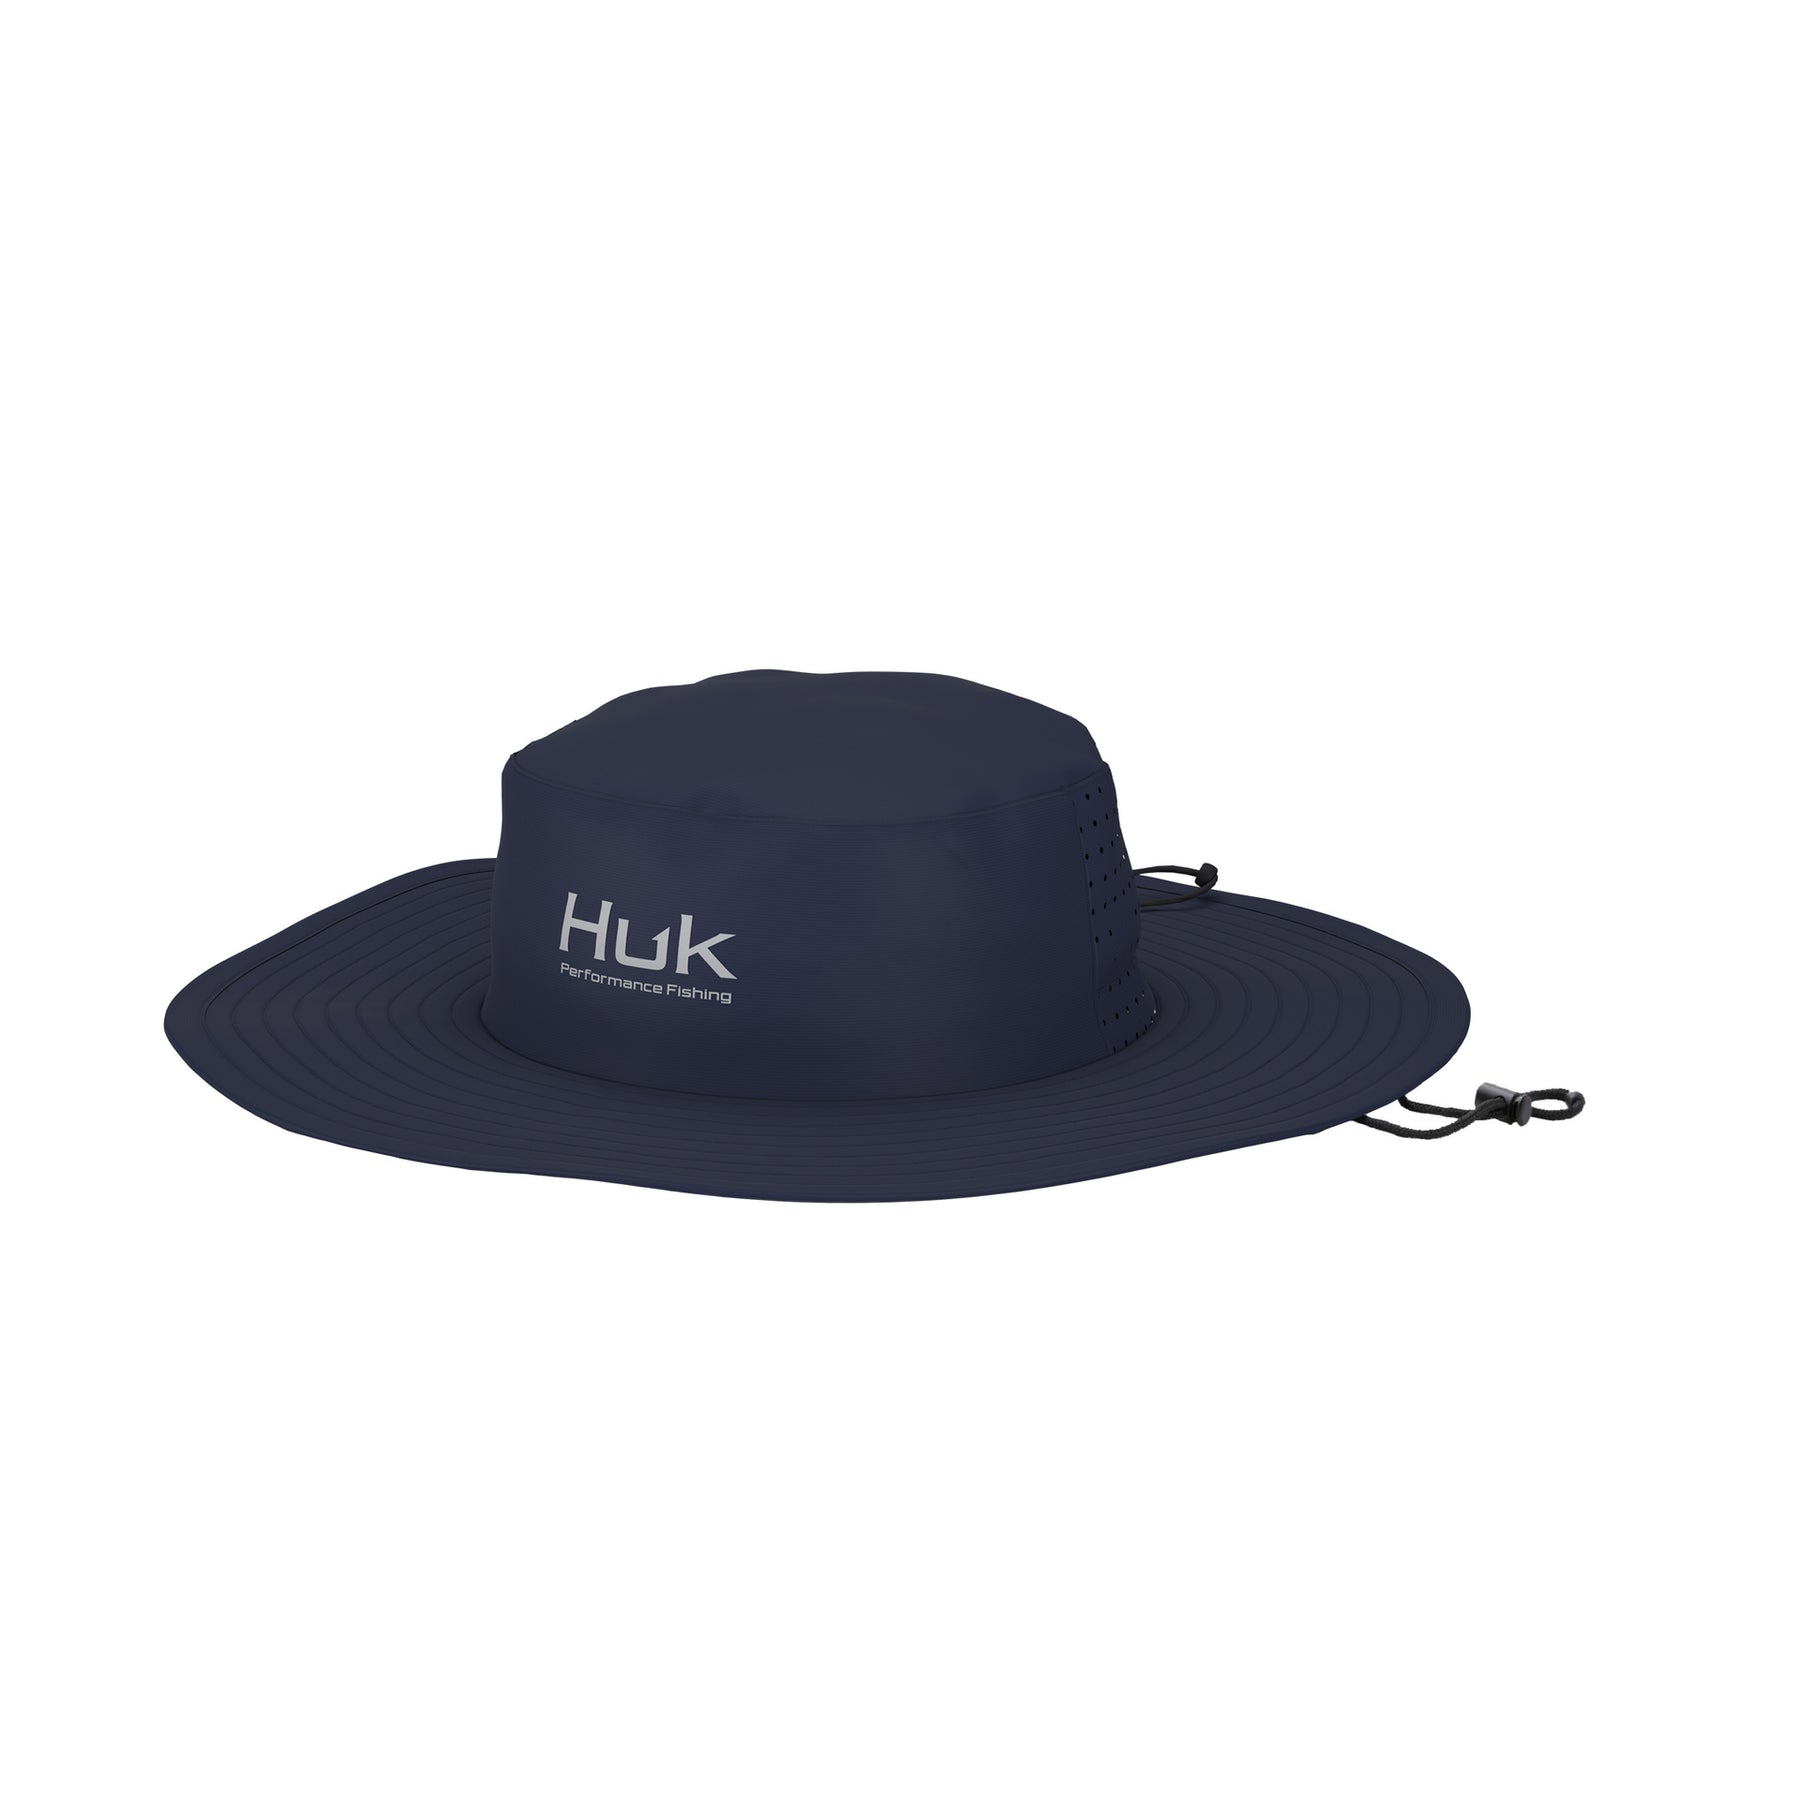  HUK Straw, Wide Brim Fishing & Beach Hat for Women